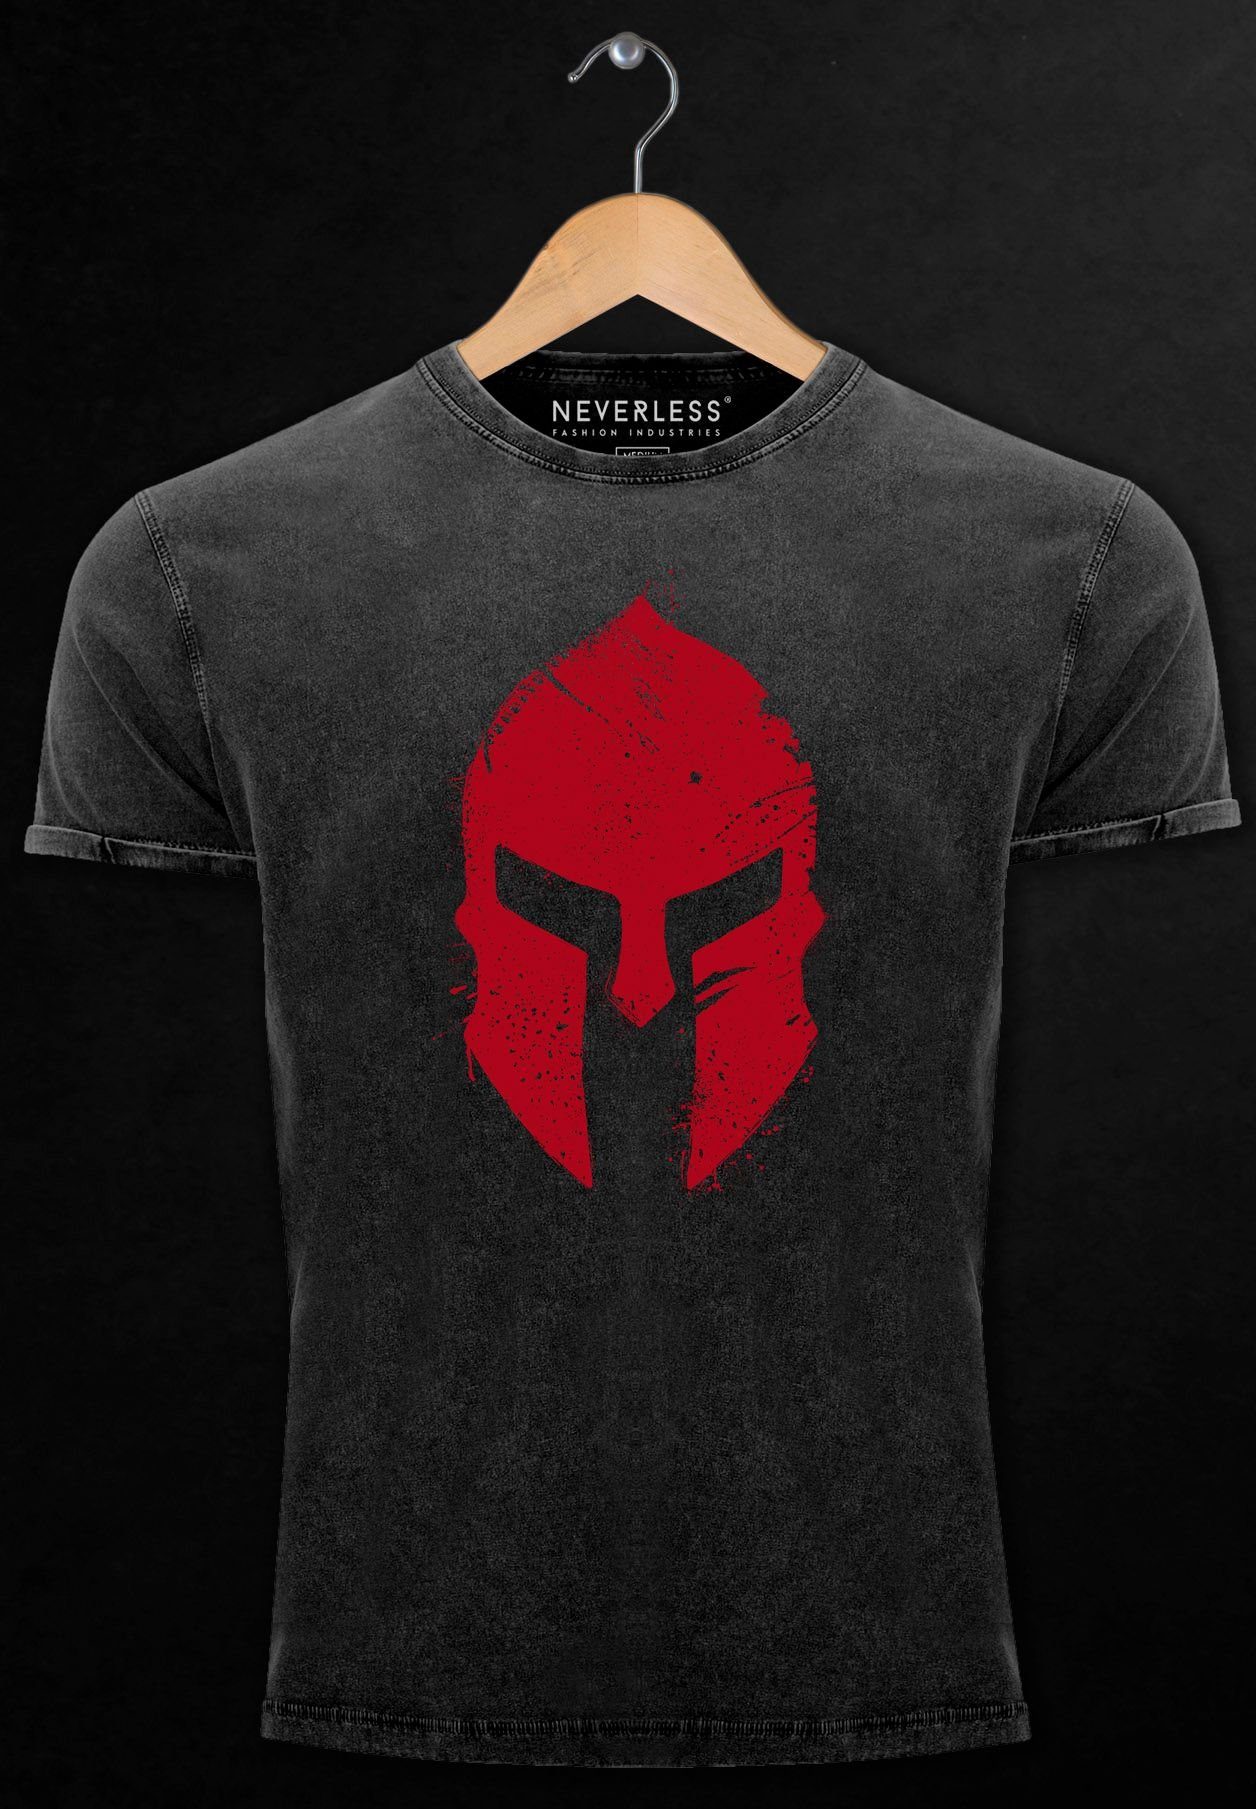 Neverless Print-Shirt Herren Vintage Shirt Print Warr mit Krieger Aufdruck Sparta-Helm schwarz-rot Print Gladiator